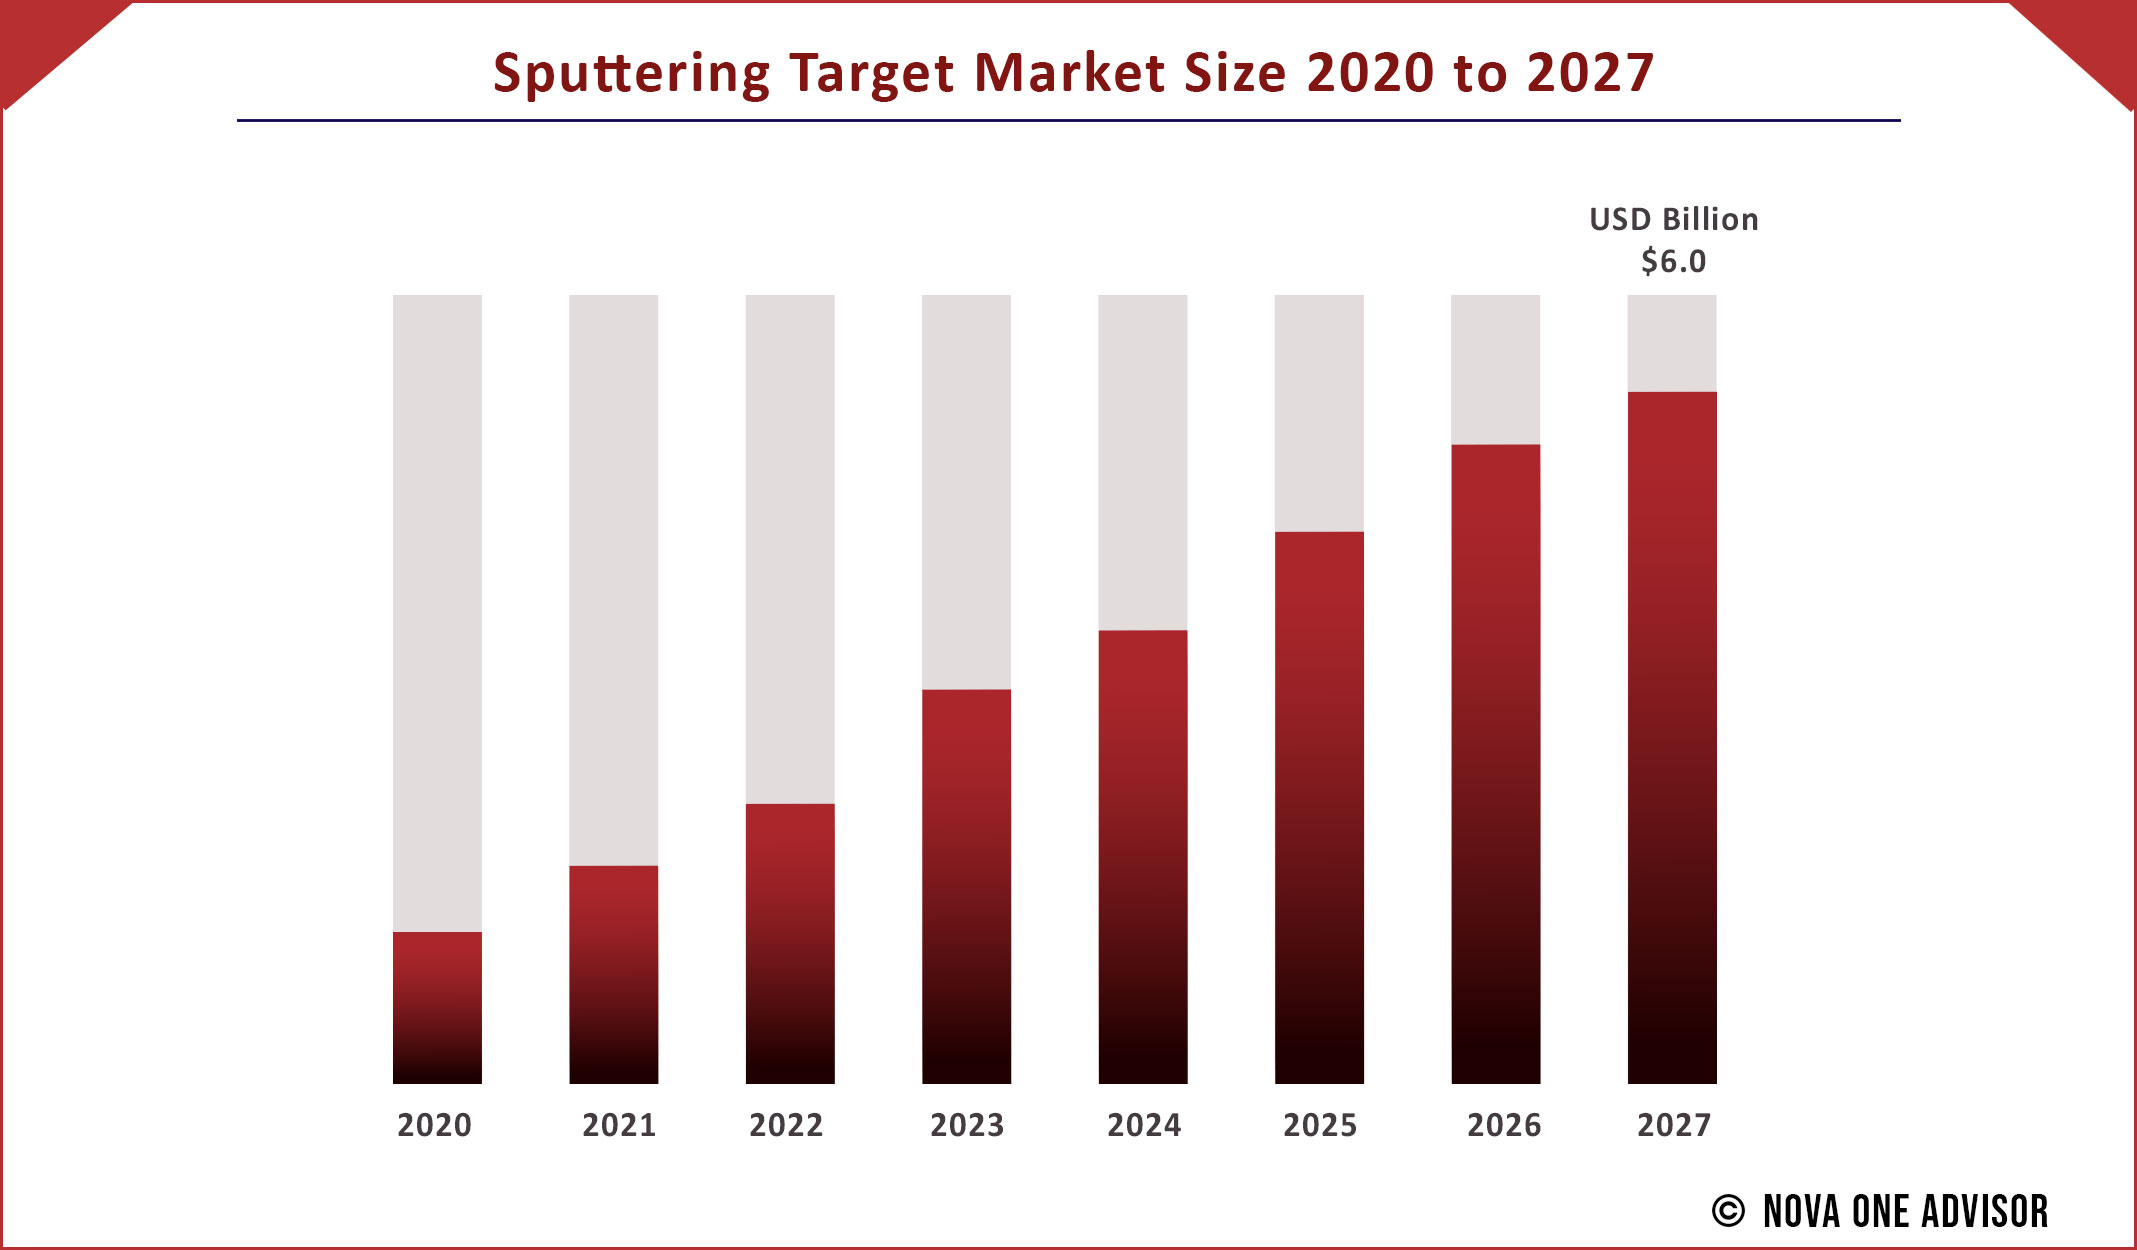 Sputtering Target Market Size 2020 to 2027